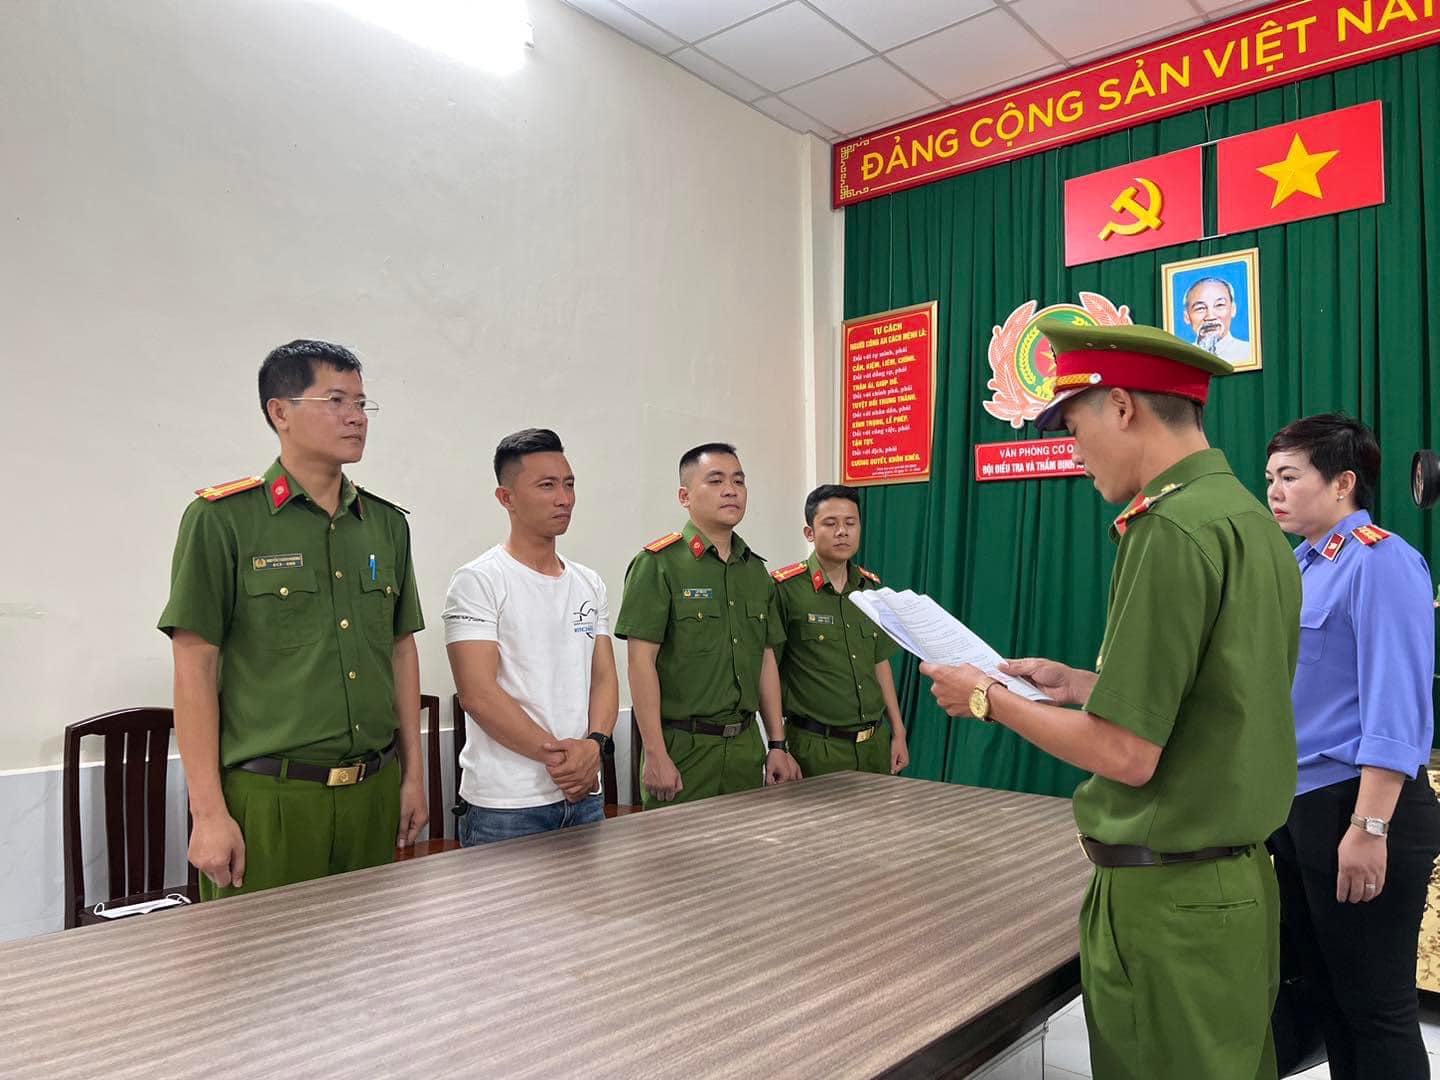 Trần Xuân Đông - thầy dạy lái moto cho Ngọc Trinh cũng bị điều tra